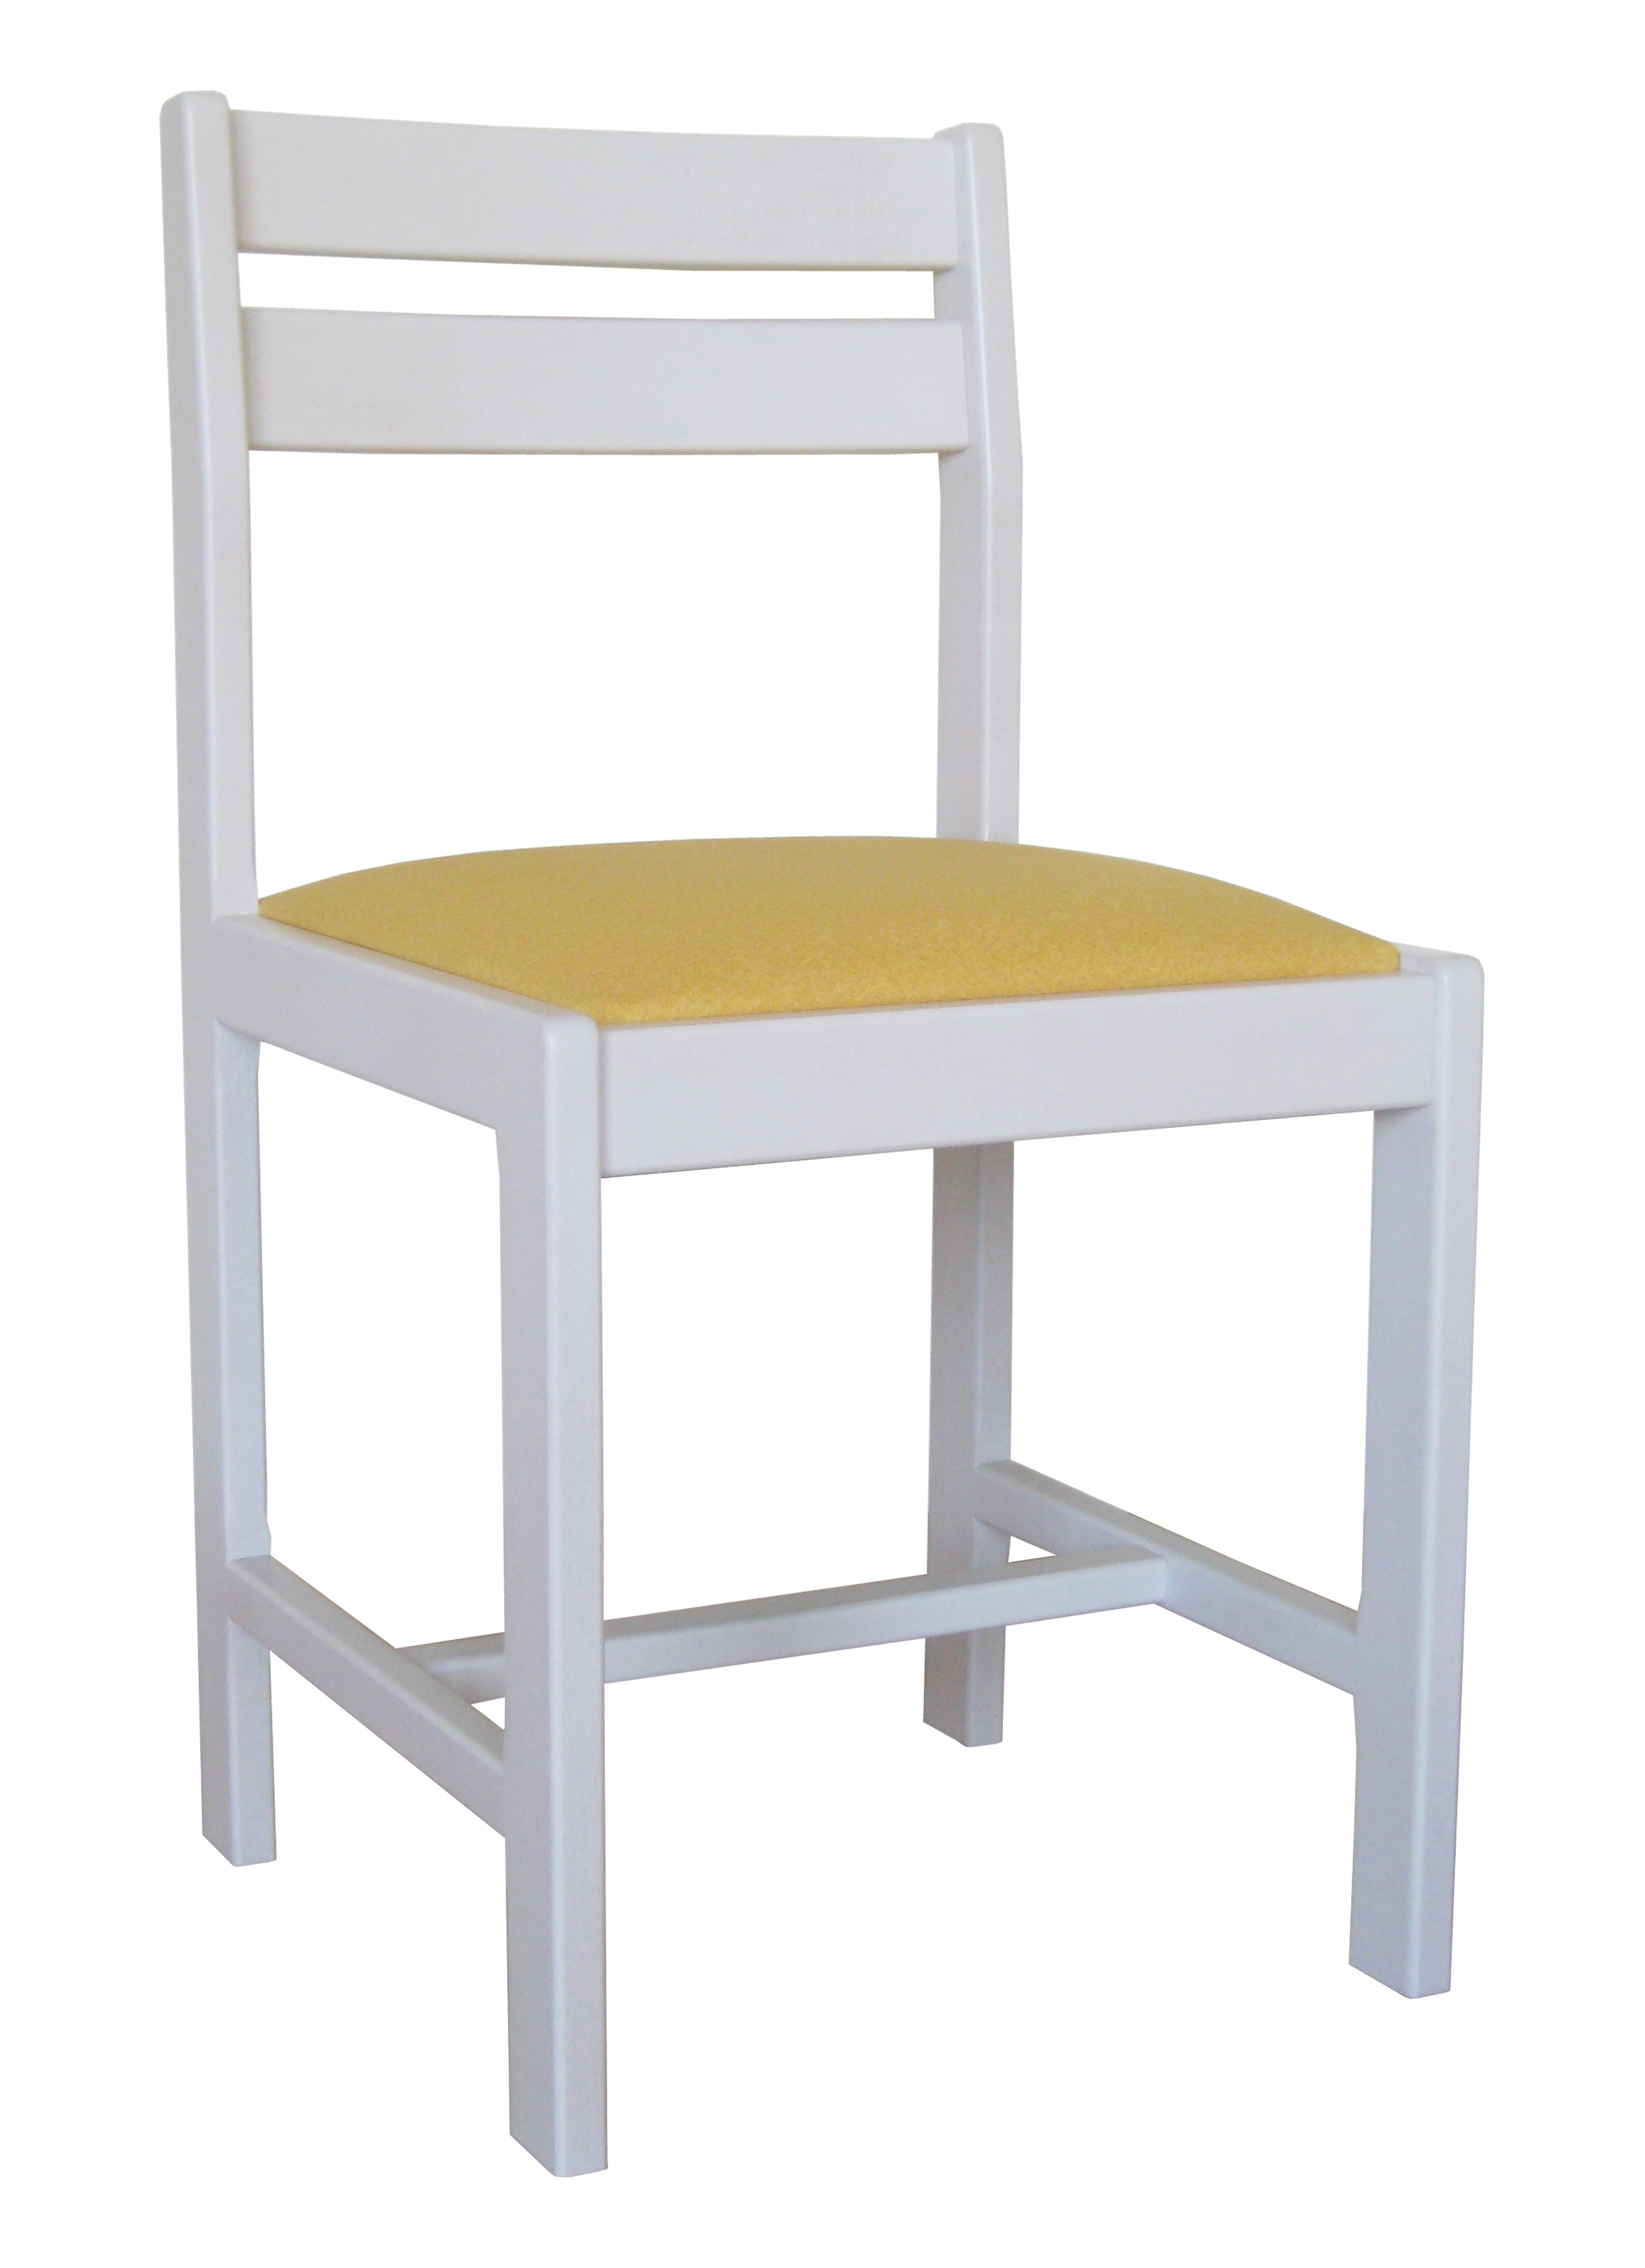 Lot de 2 chaise aradis en hêtre massif - blanc et jaune_0